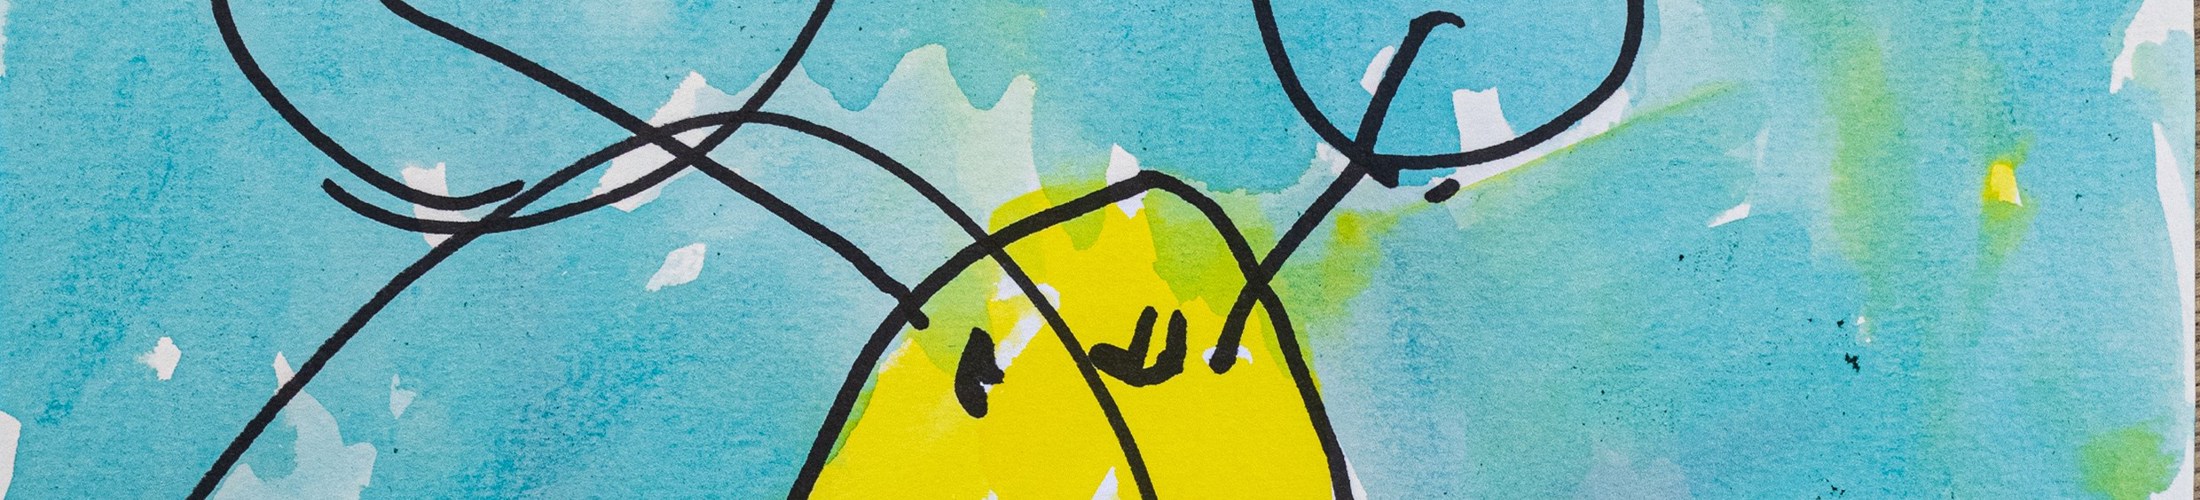 Børnetegning fra Alfehuset i Næstved Kommune. Tegningen er en gul sommerfugl med røde vinger, baggrunden er blå.